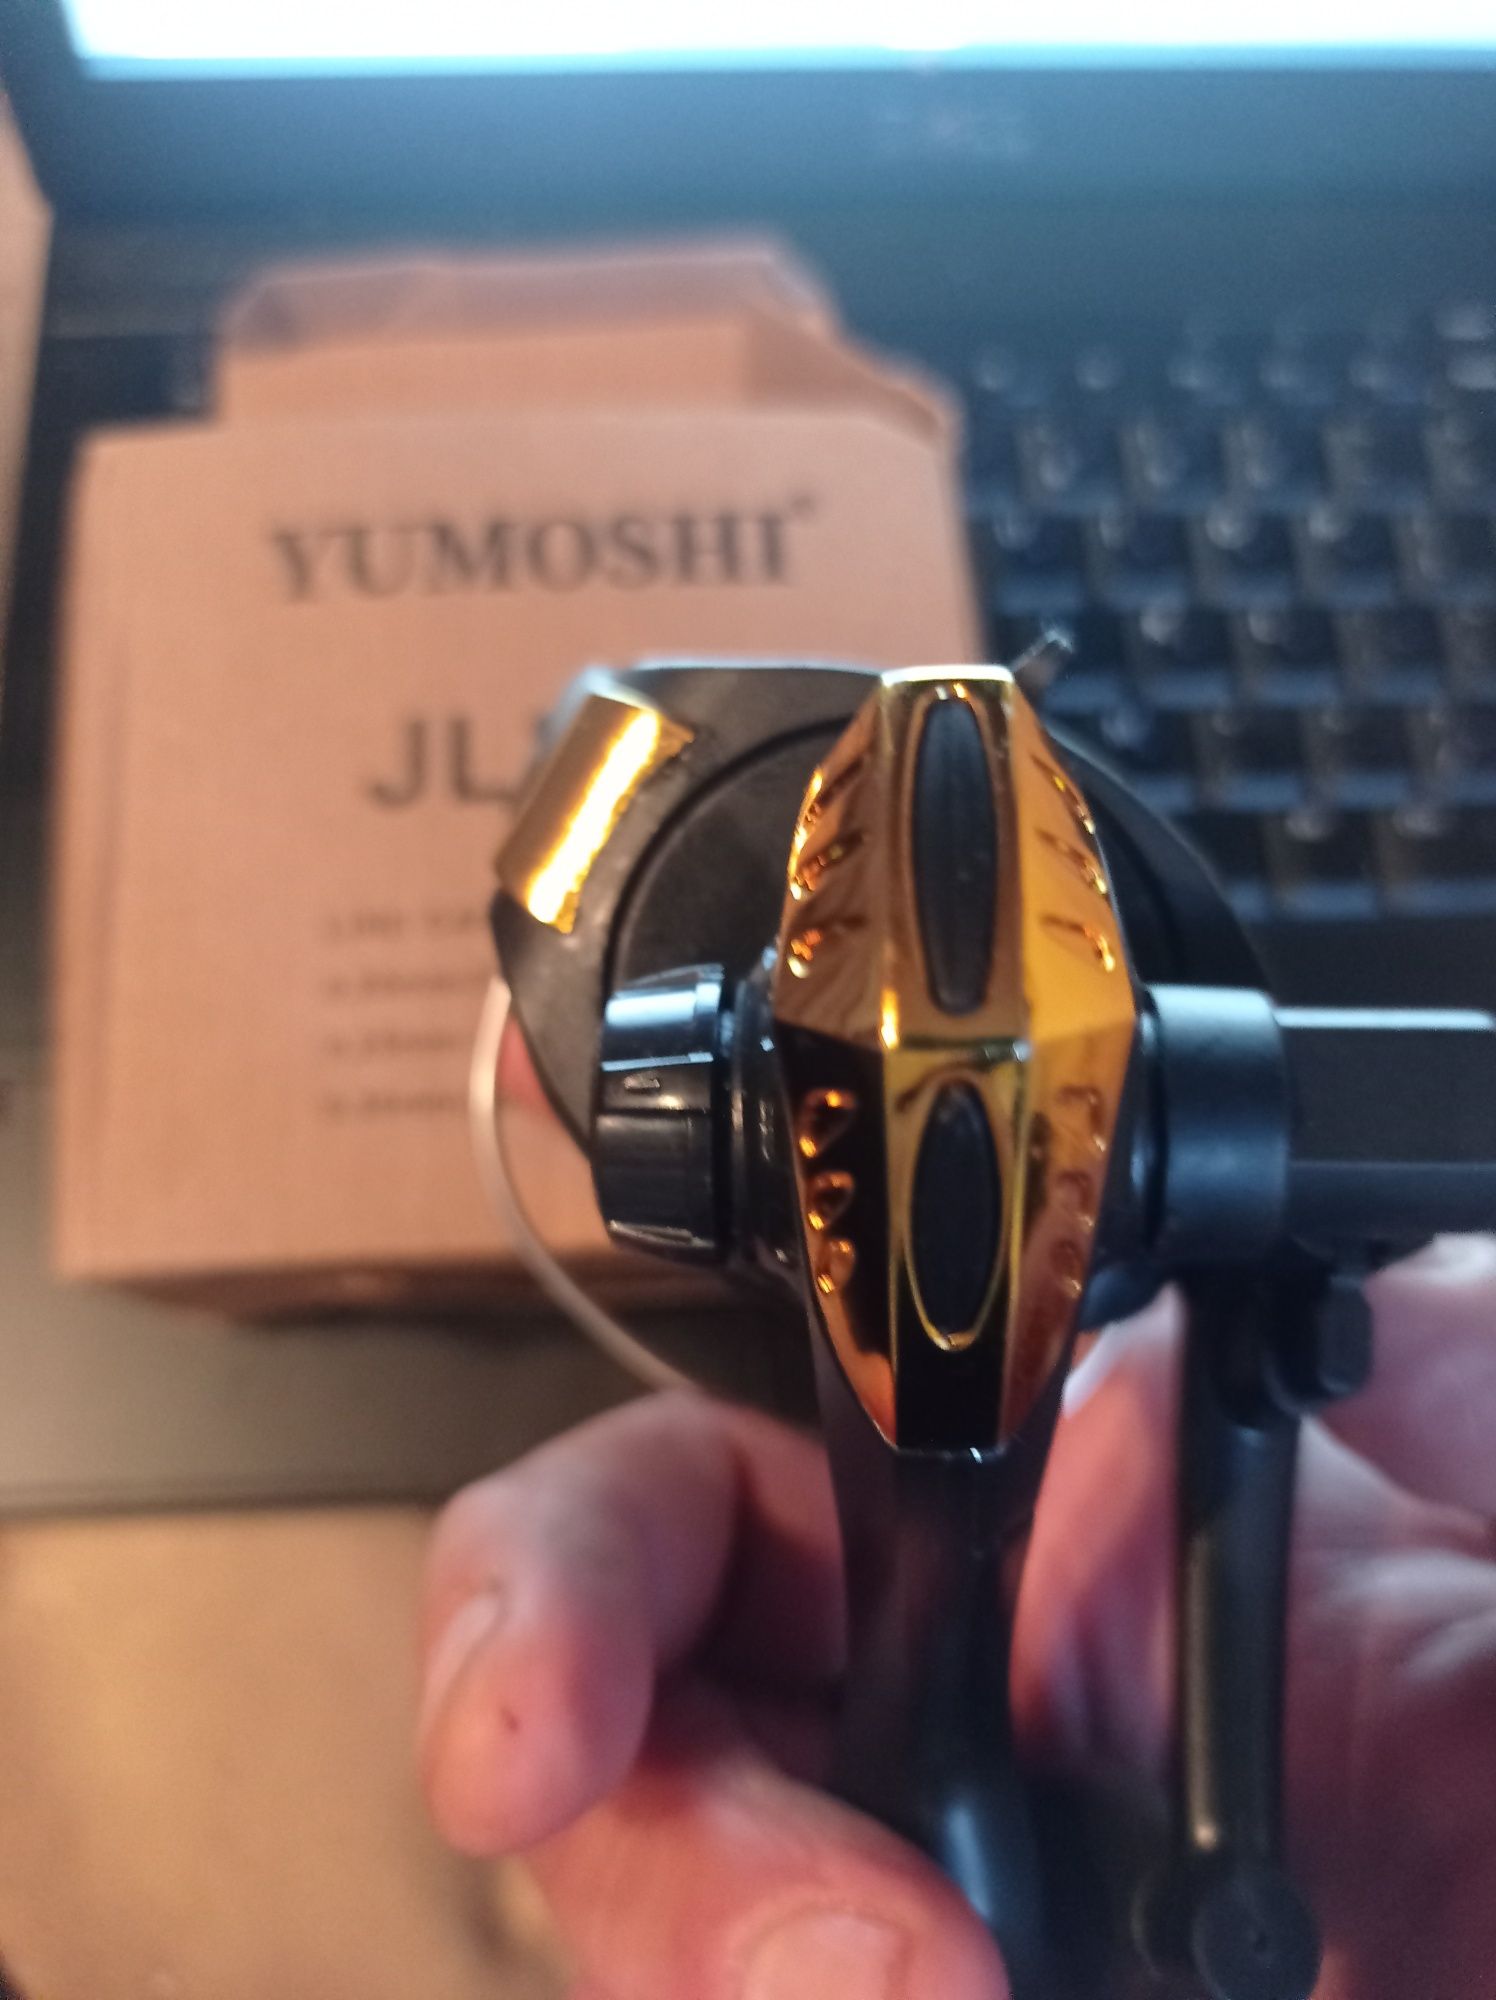 Kołowrotek YUMOSHI JL 200 Nowy